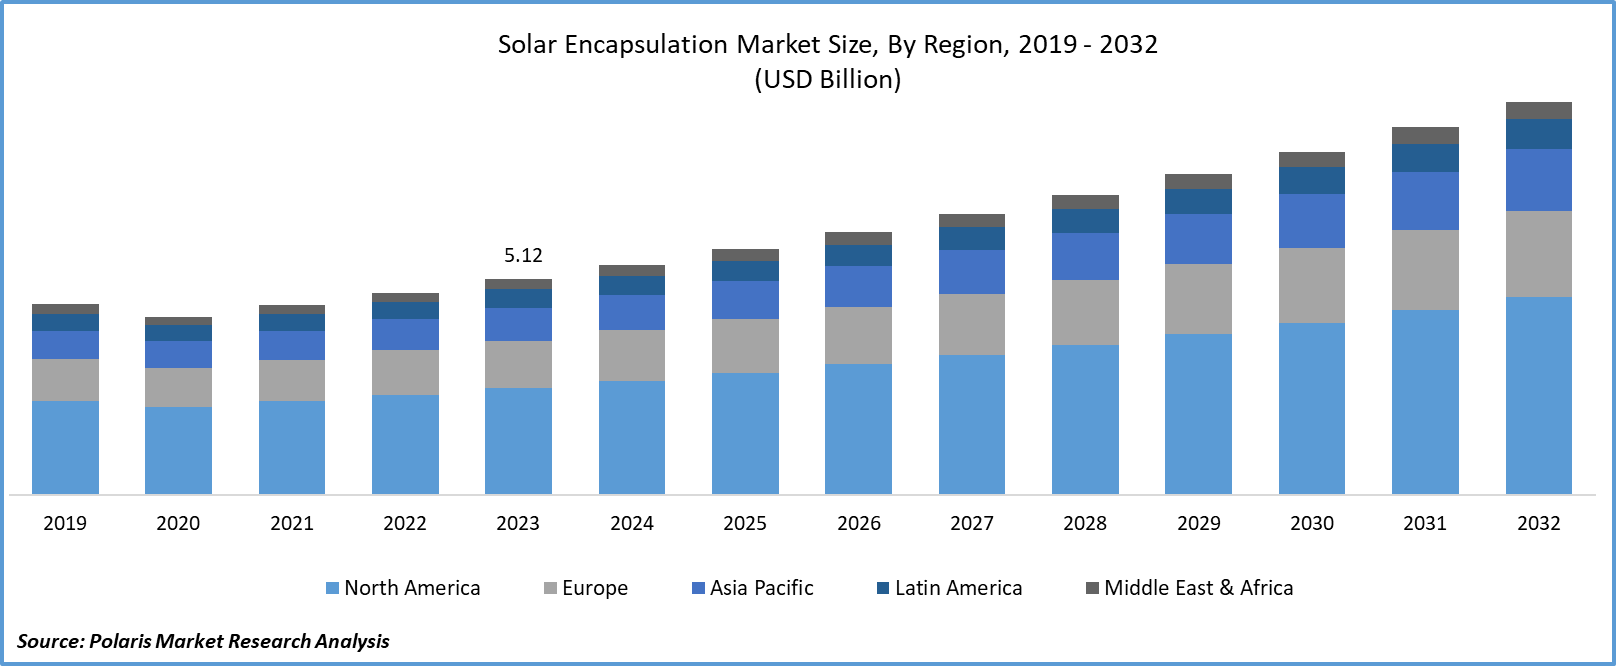 Solar Encapsulation Market Size